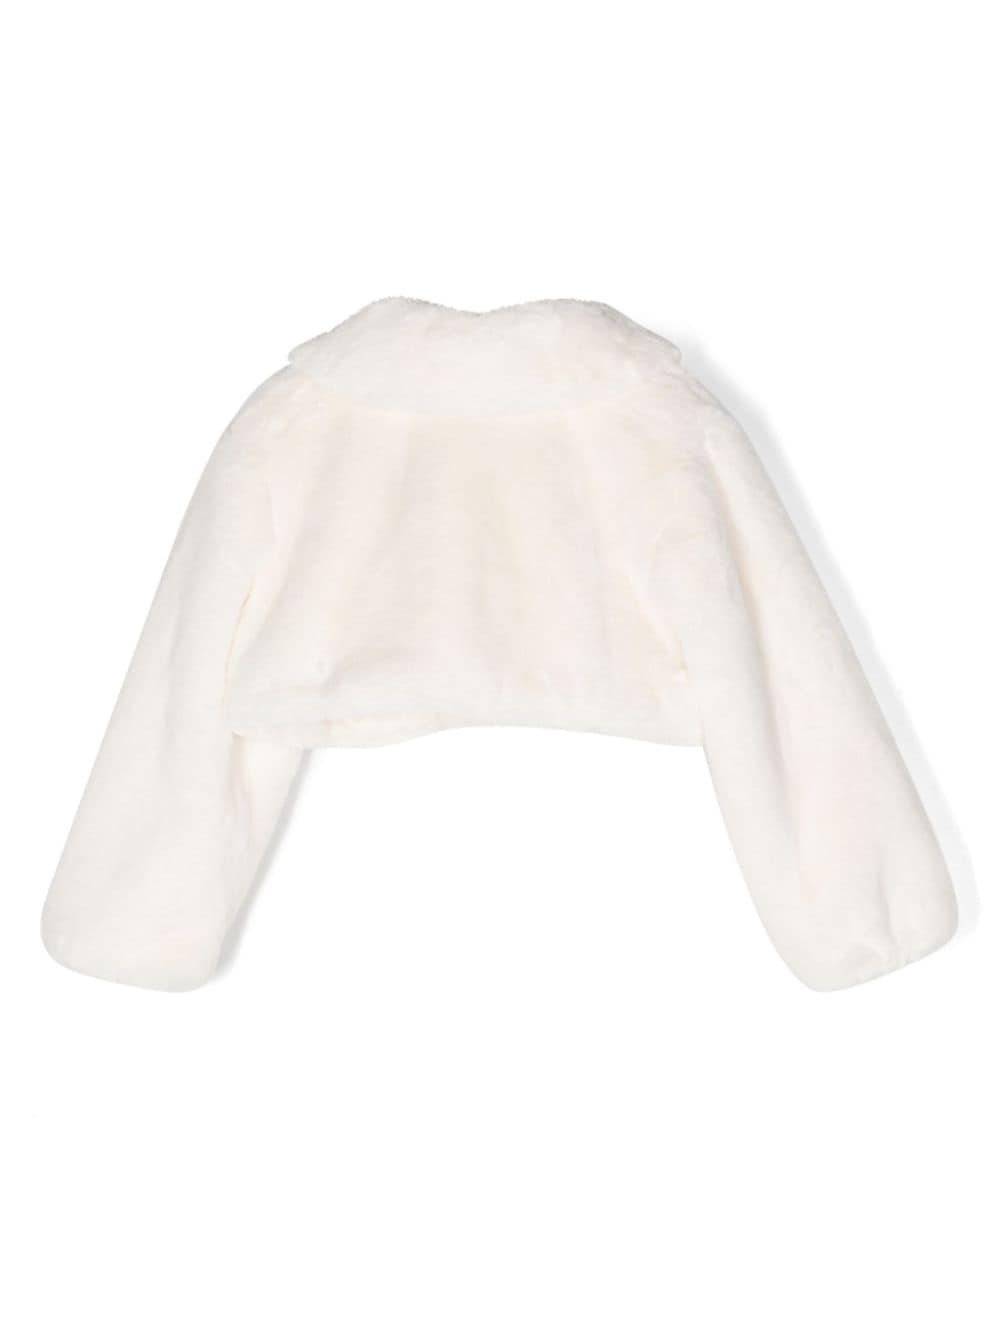 Manteau de fourrure blanc pour fille avec col et manches longues